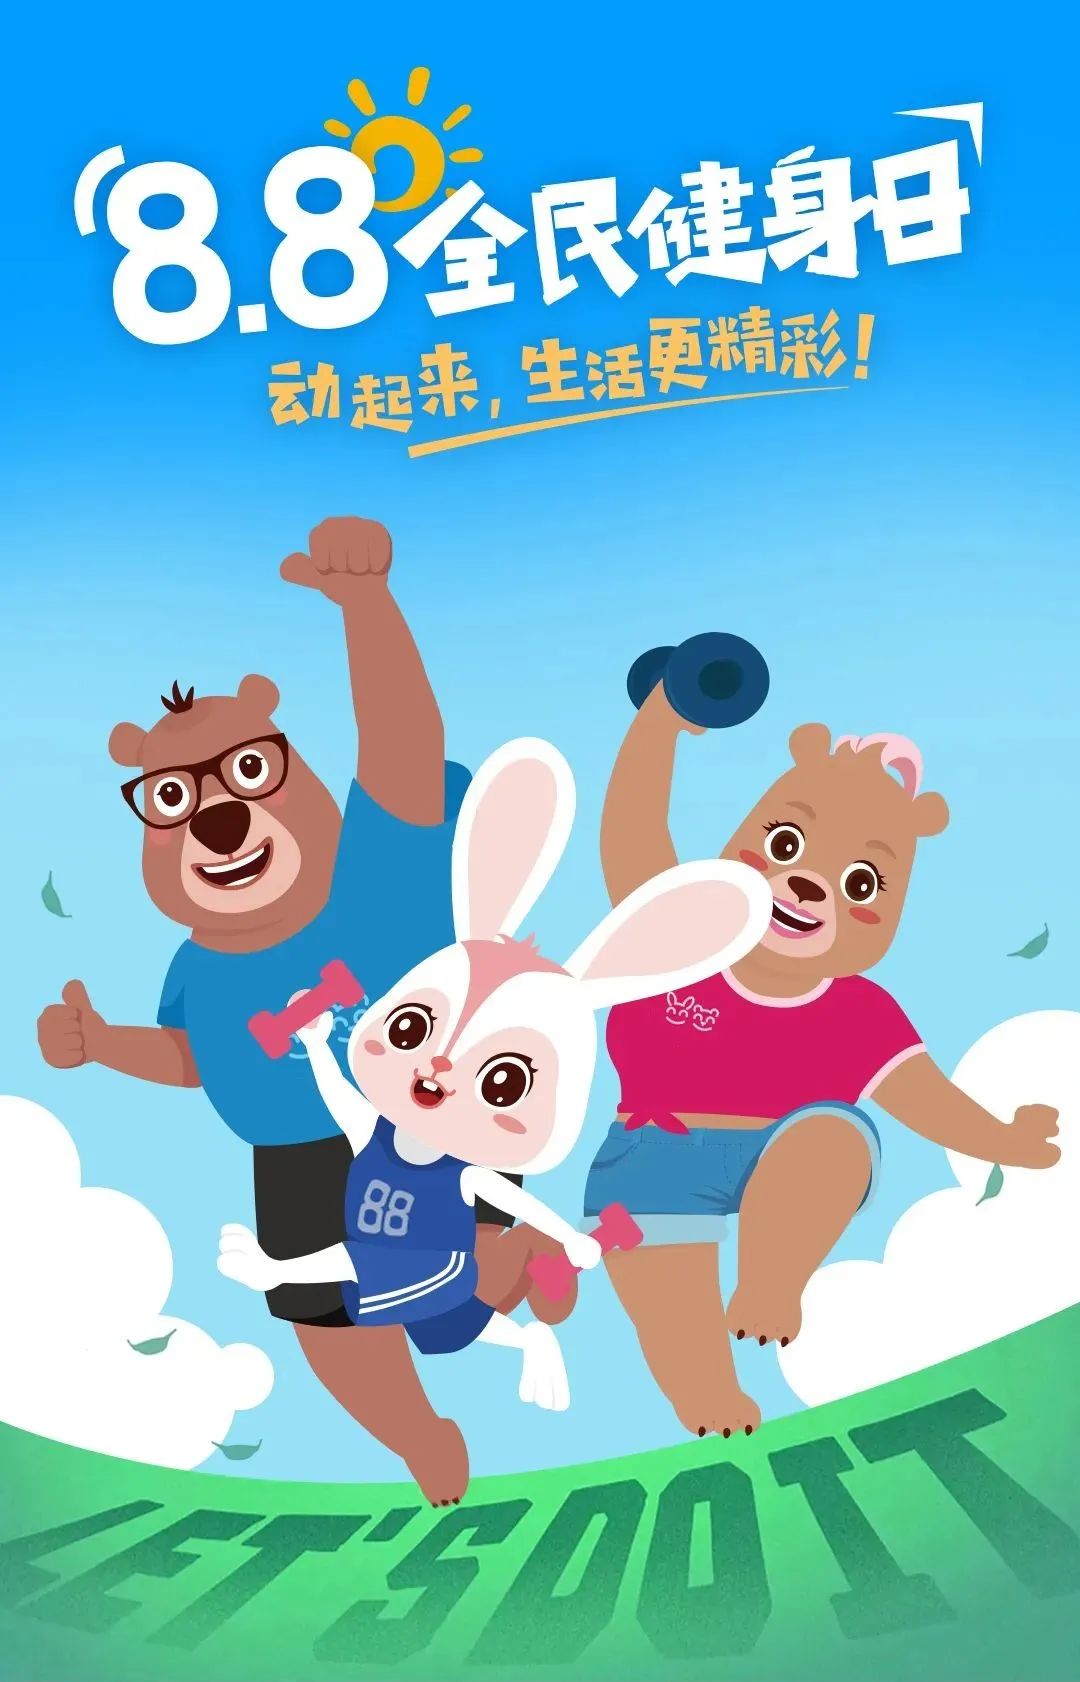 兔加熊儿童运动儿童体适能训练8.8全民健身日01.jpg